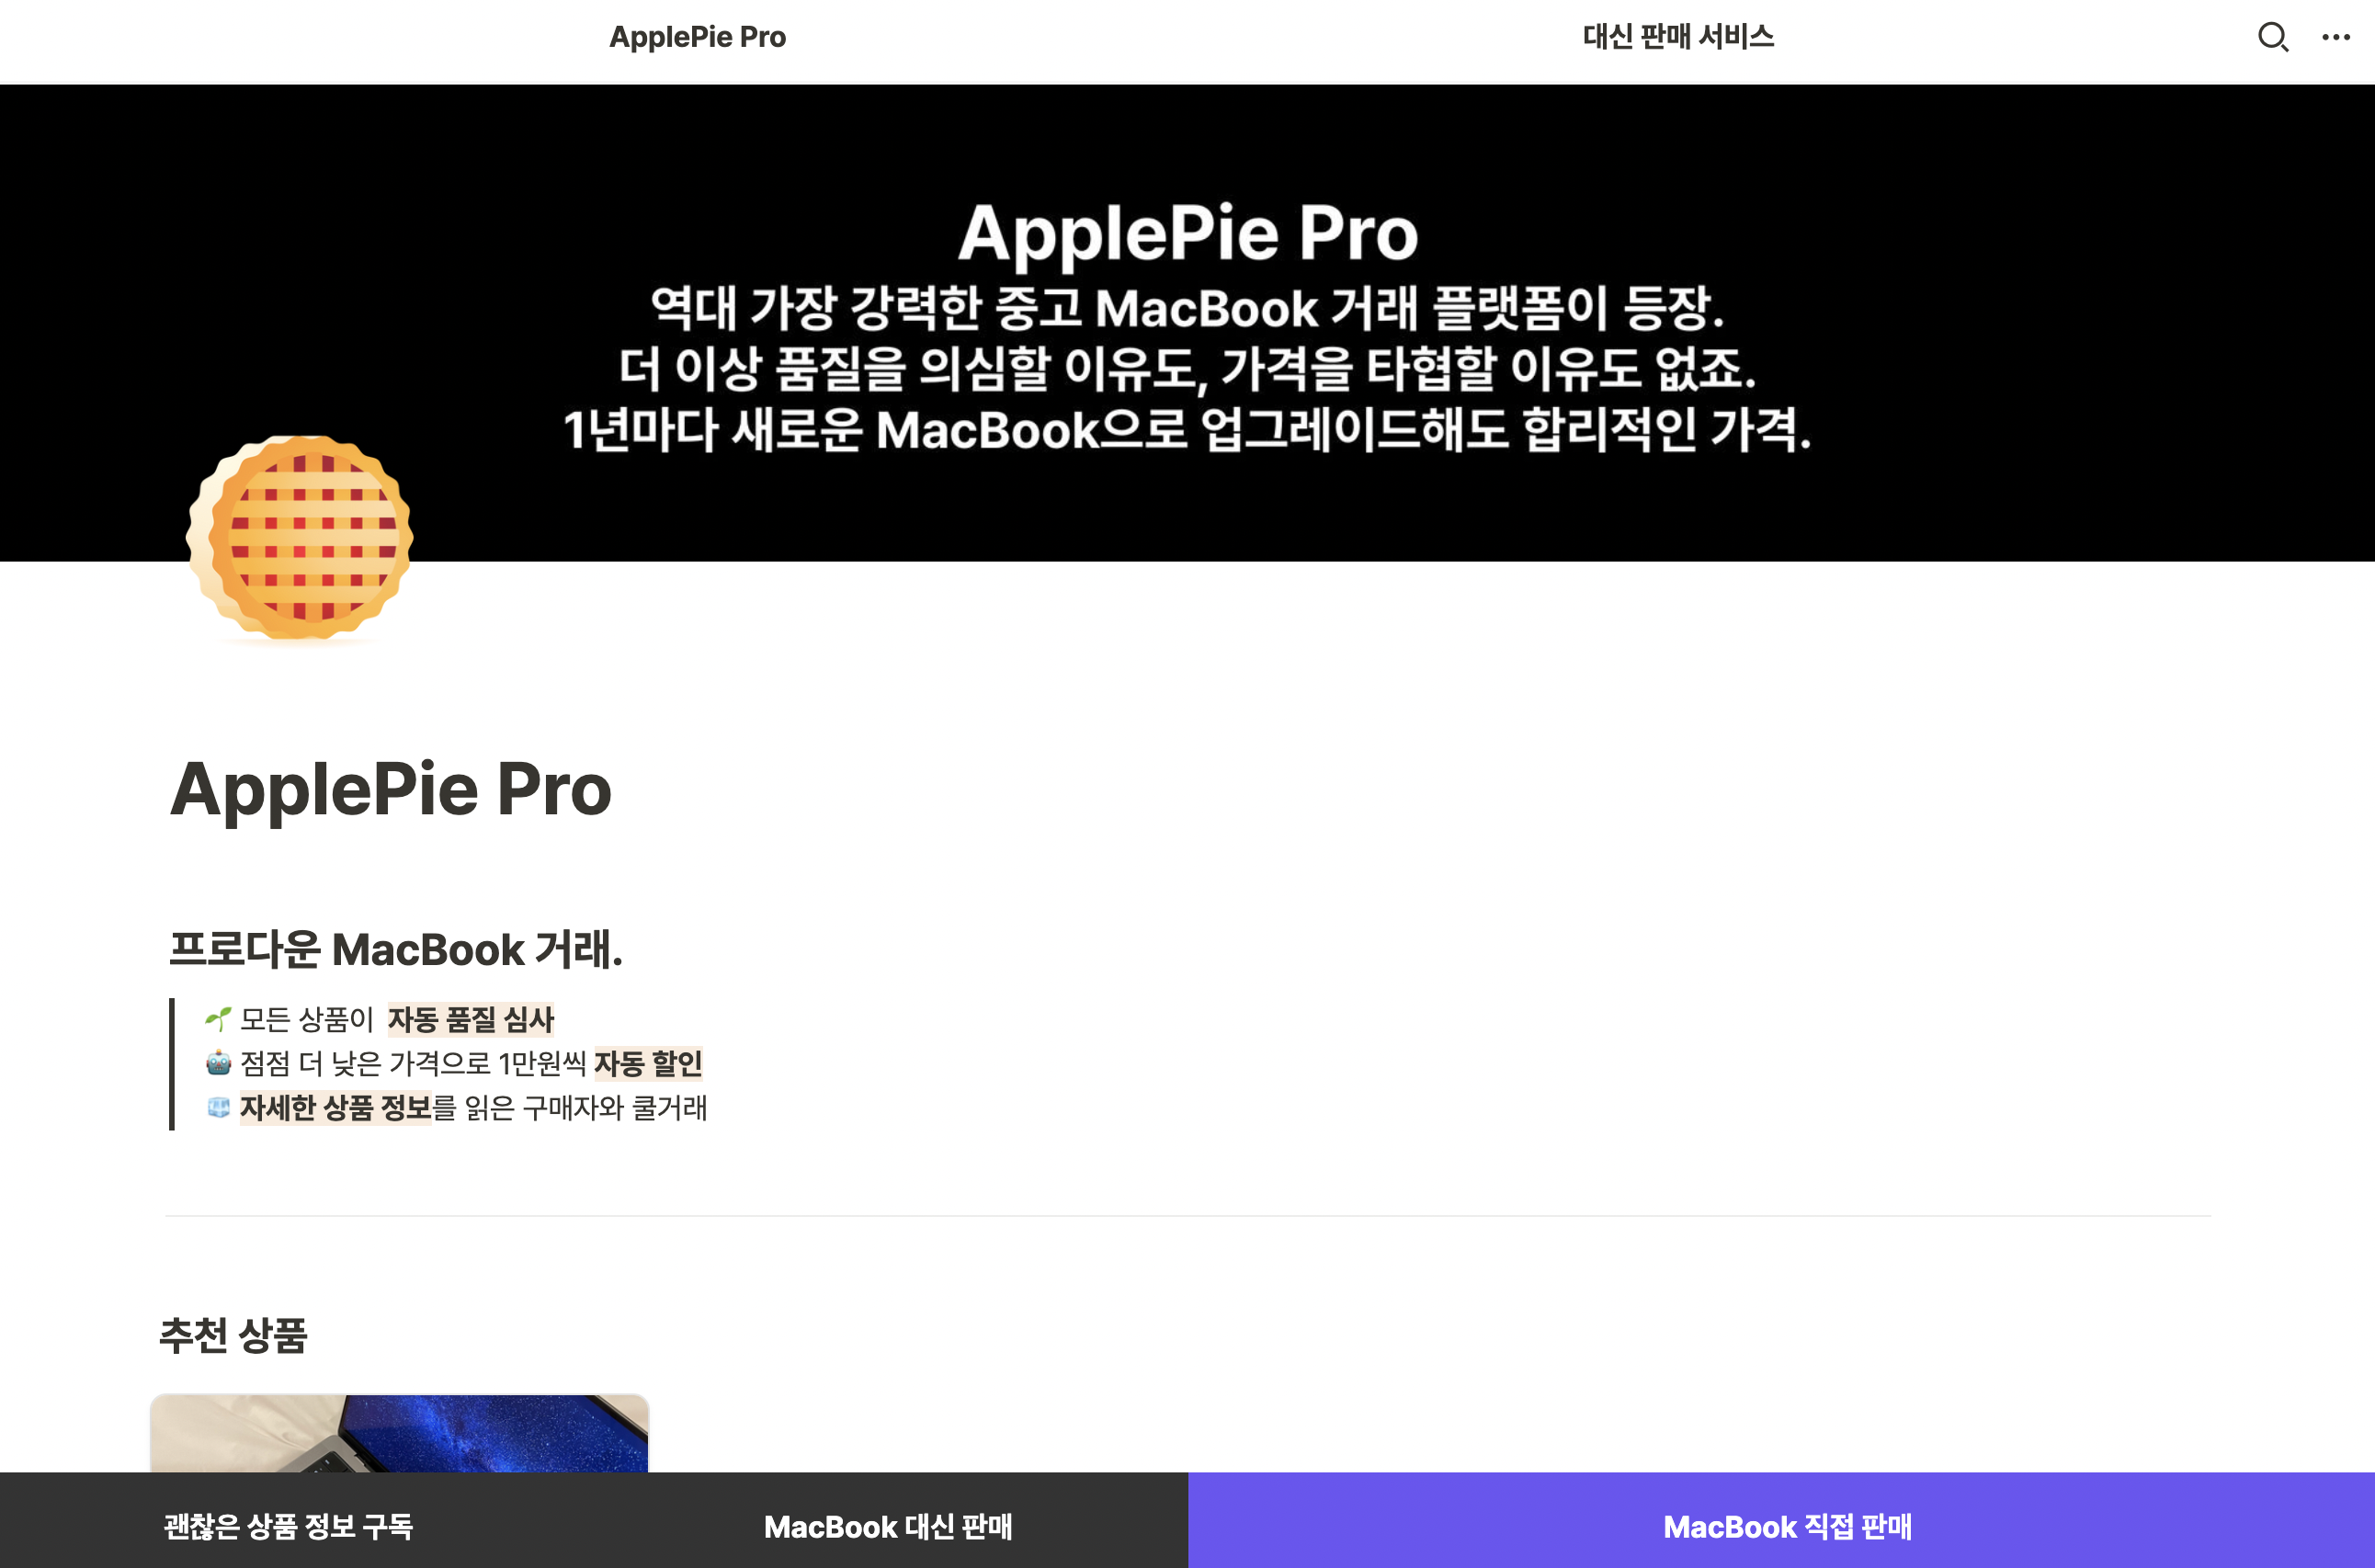 ApplePie Pro 홈페이지 - 최소 기능을 담은 제품